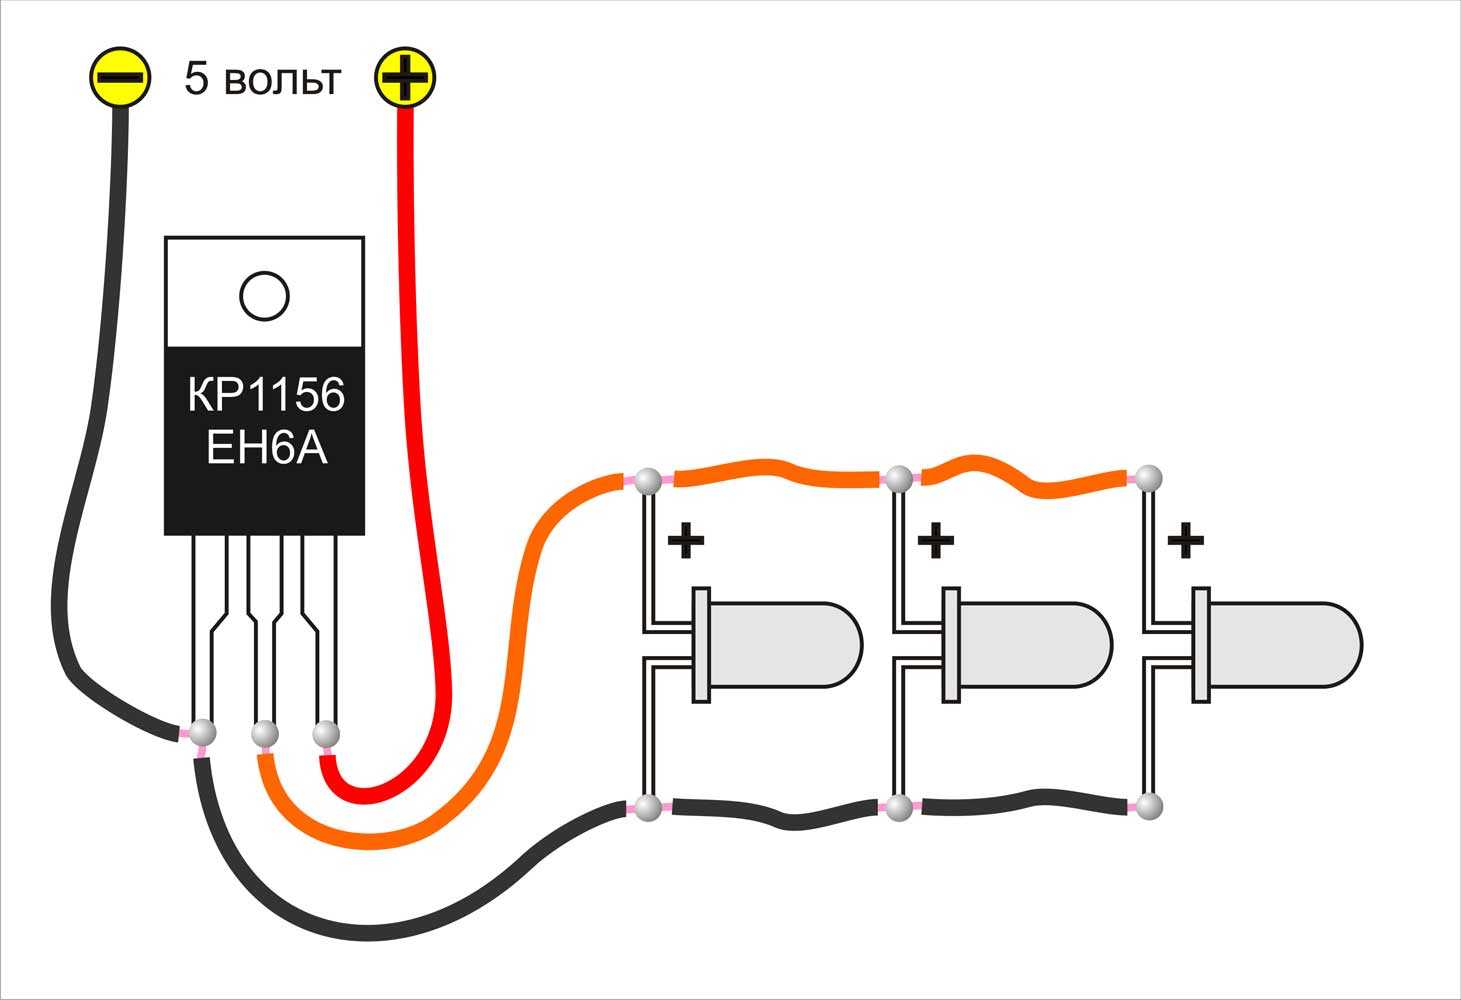 Как подключить светодиод к 12 вольтам